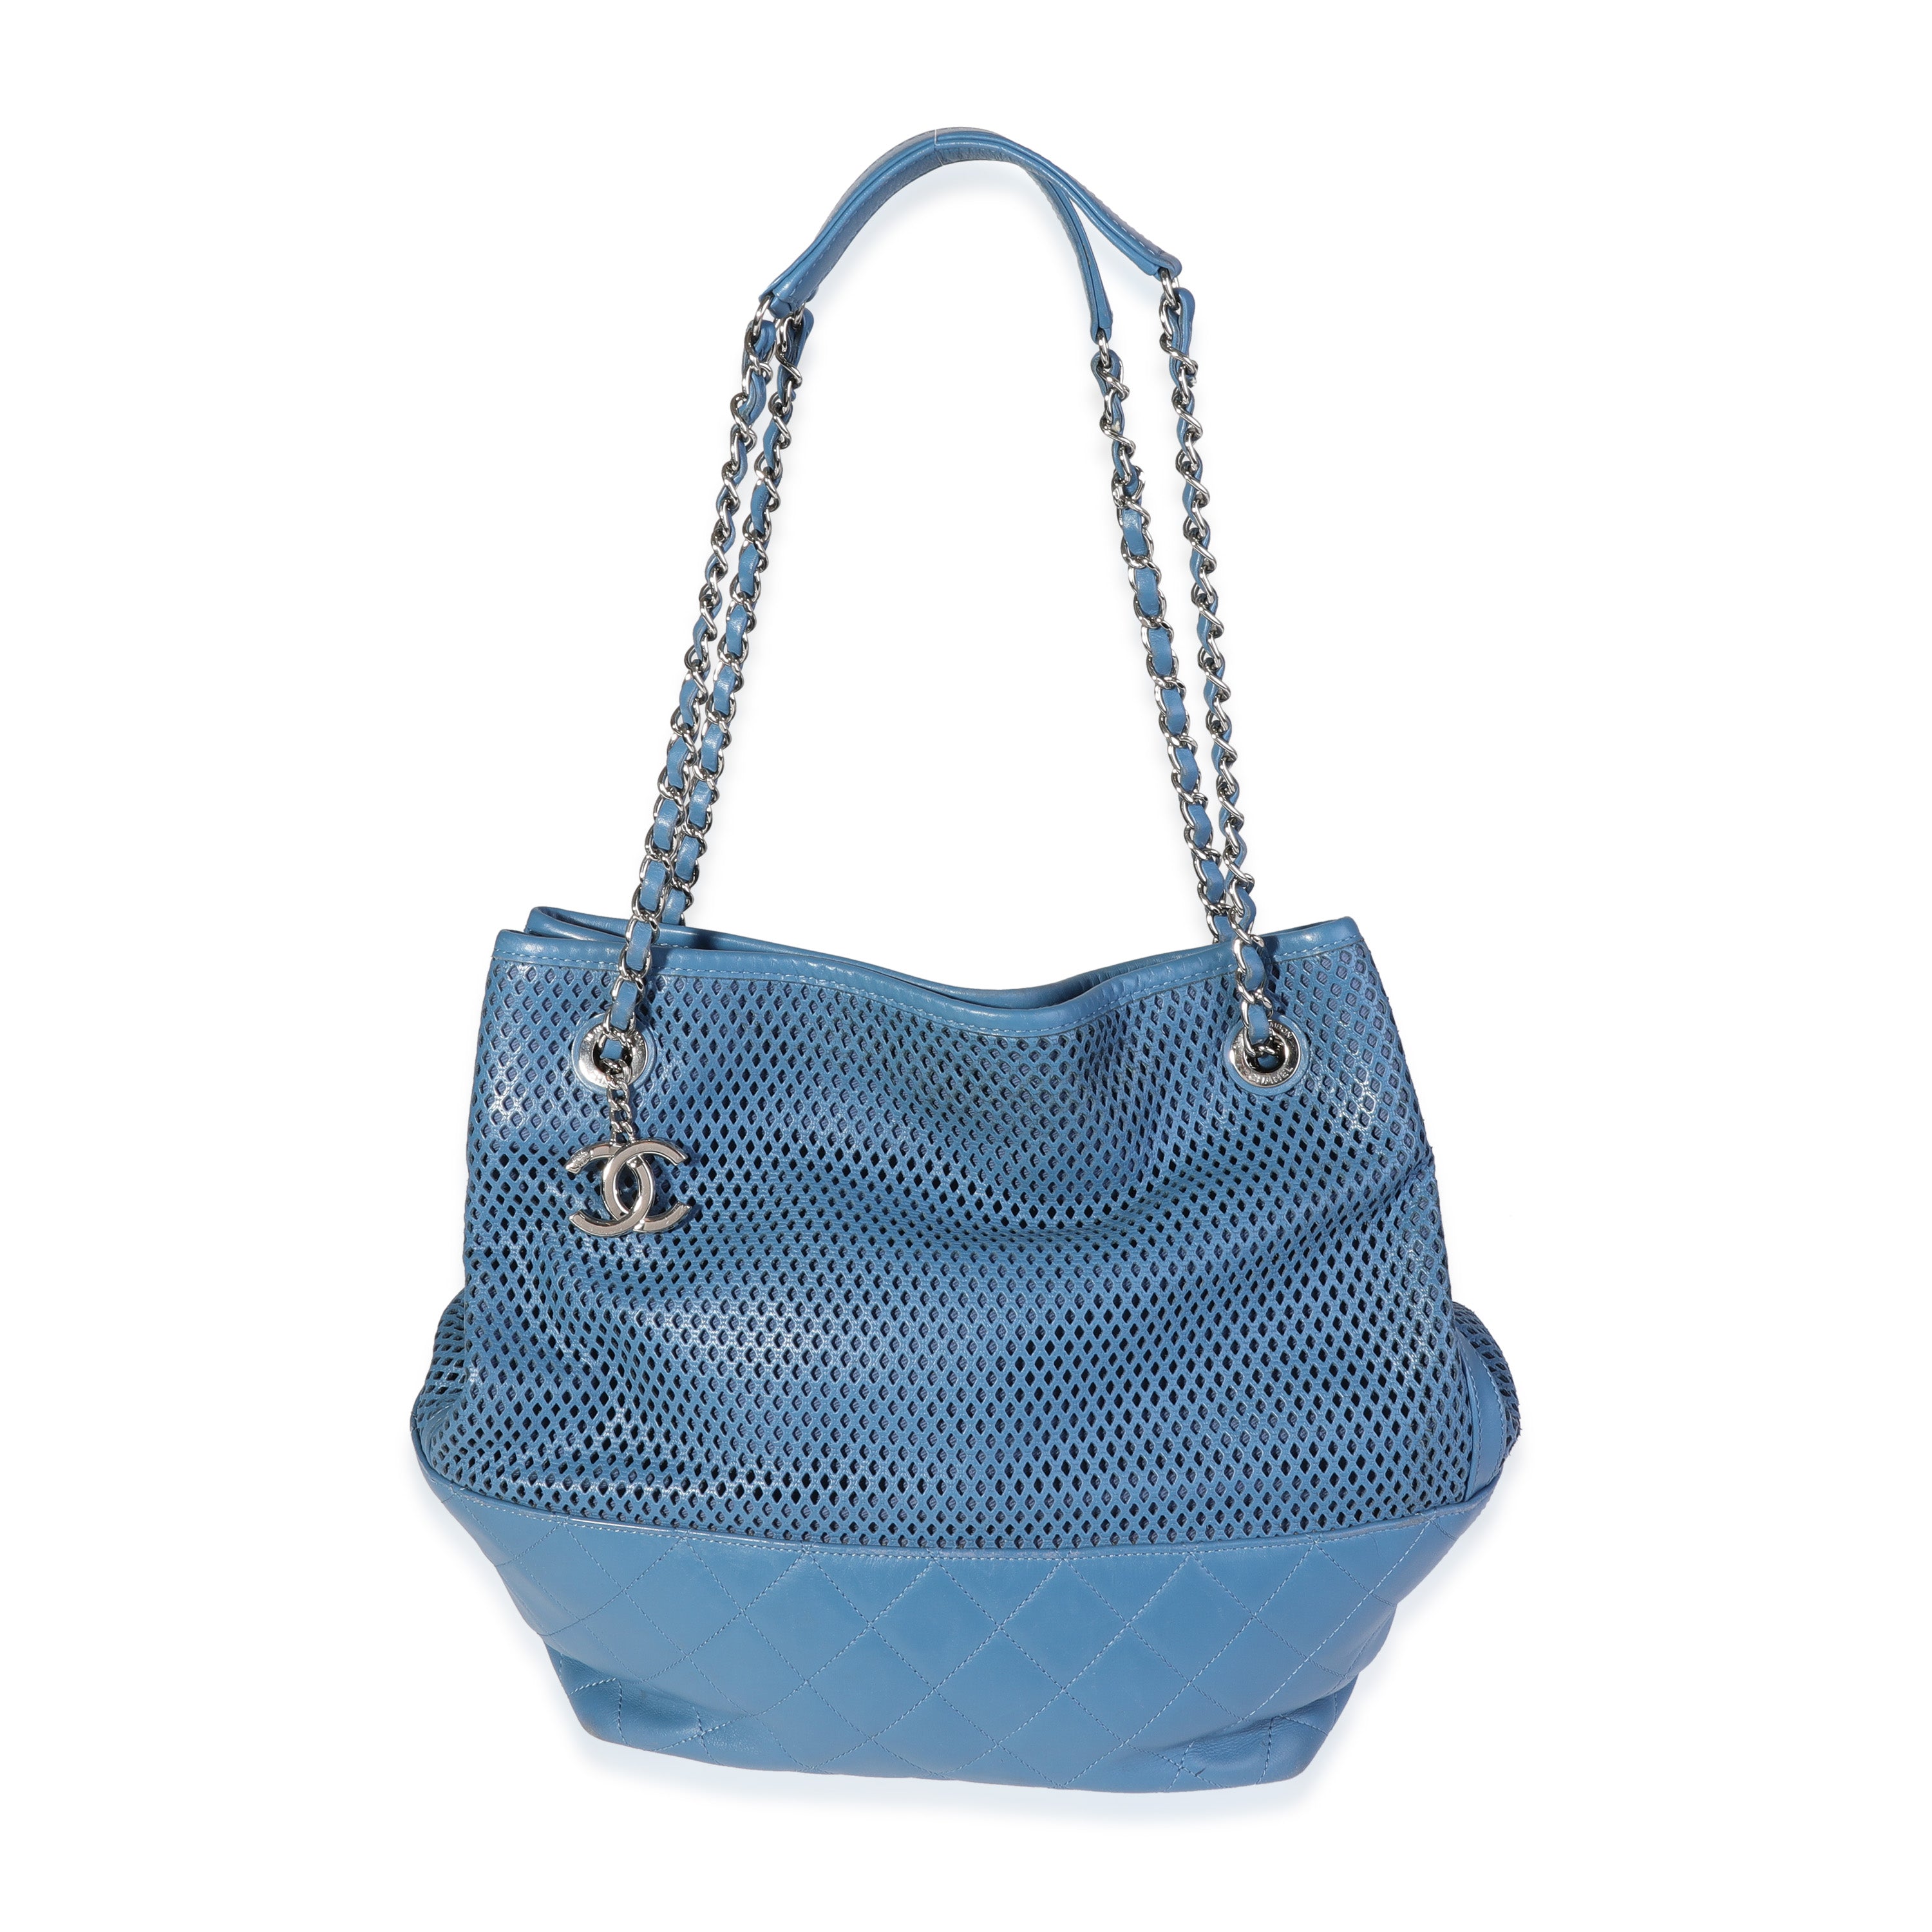 Chanel Khaki Shiny Calfskin 22 Bag, myGemma